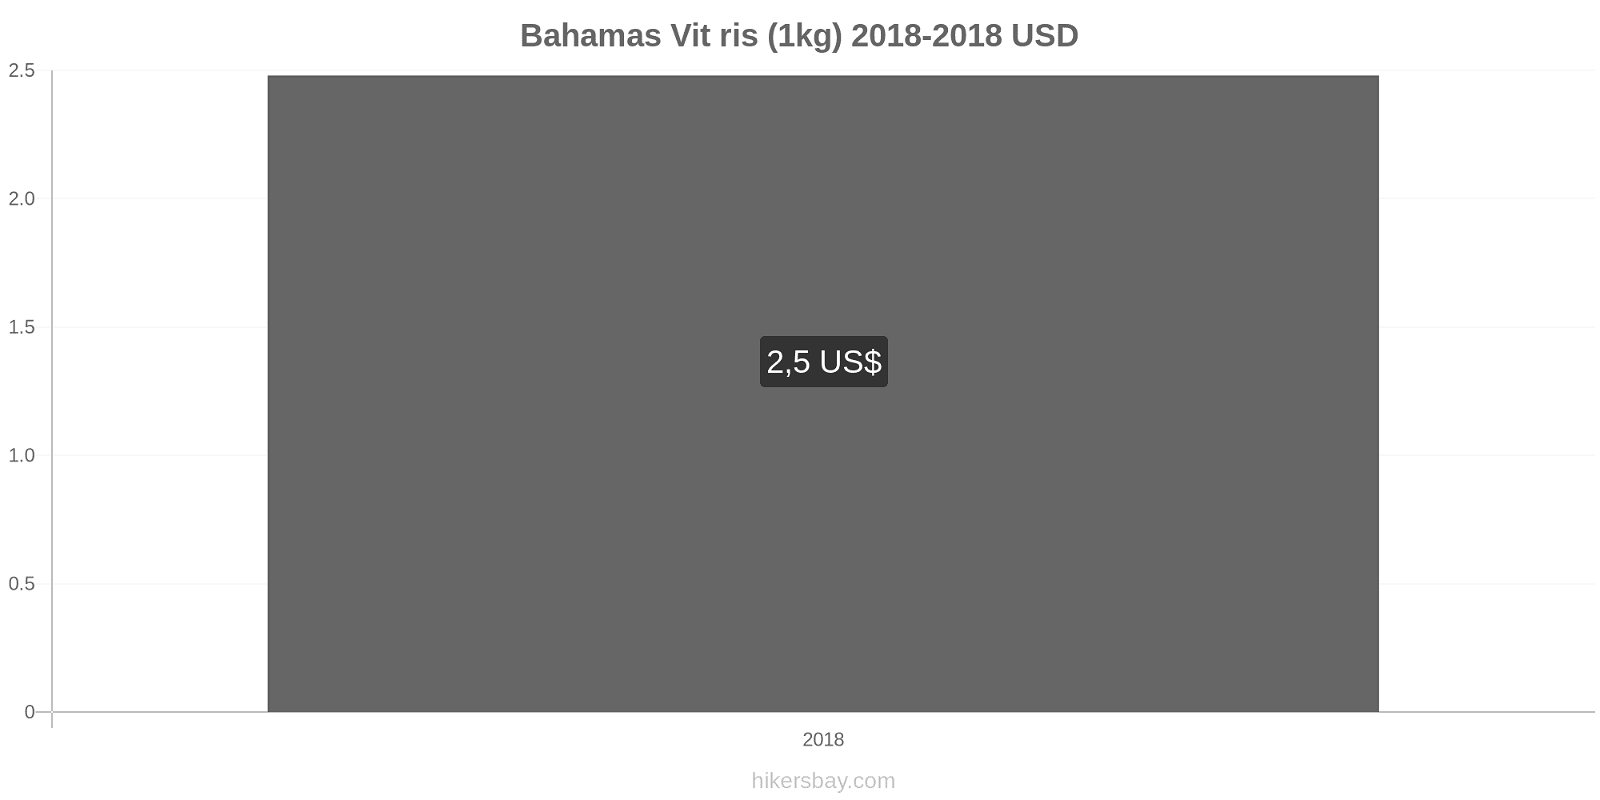 Bahamas prisändringar Kilo vitt ris hikersbay.com